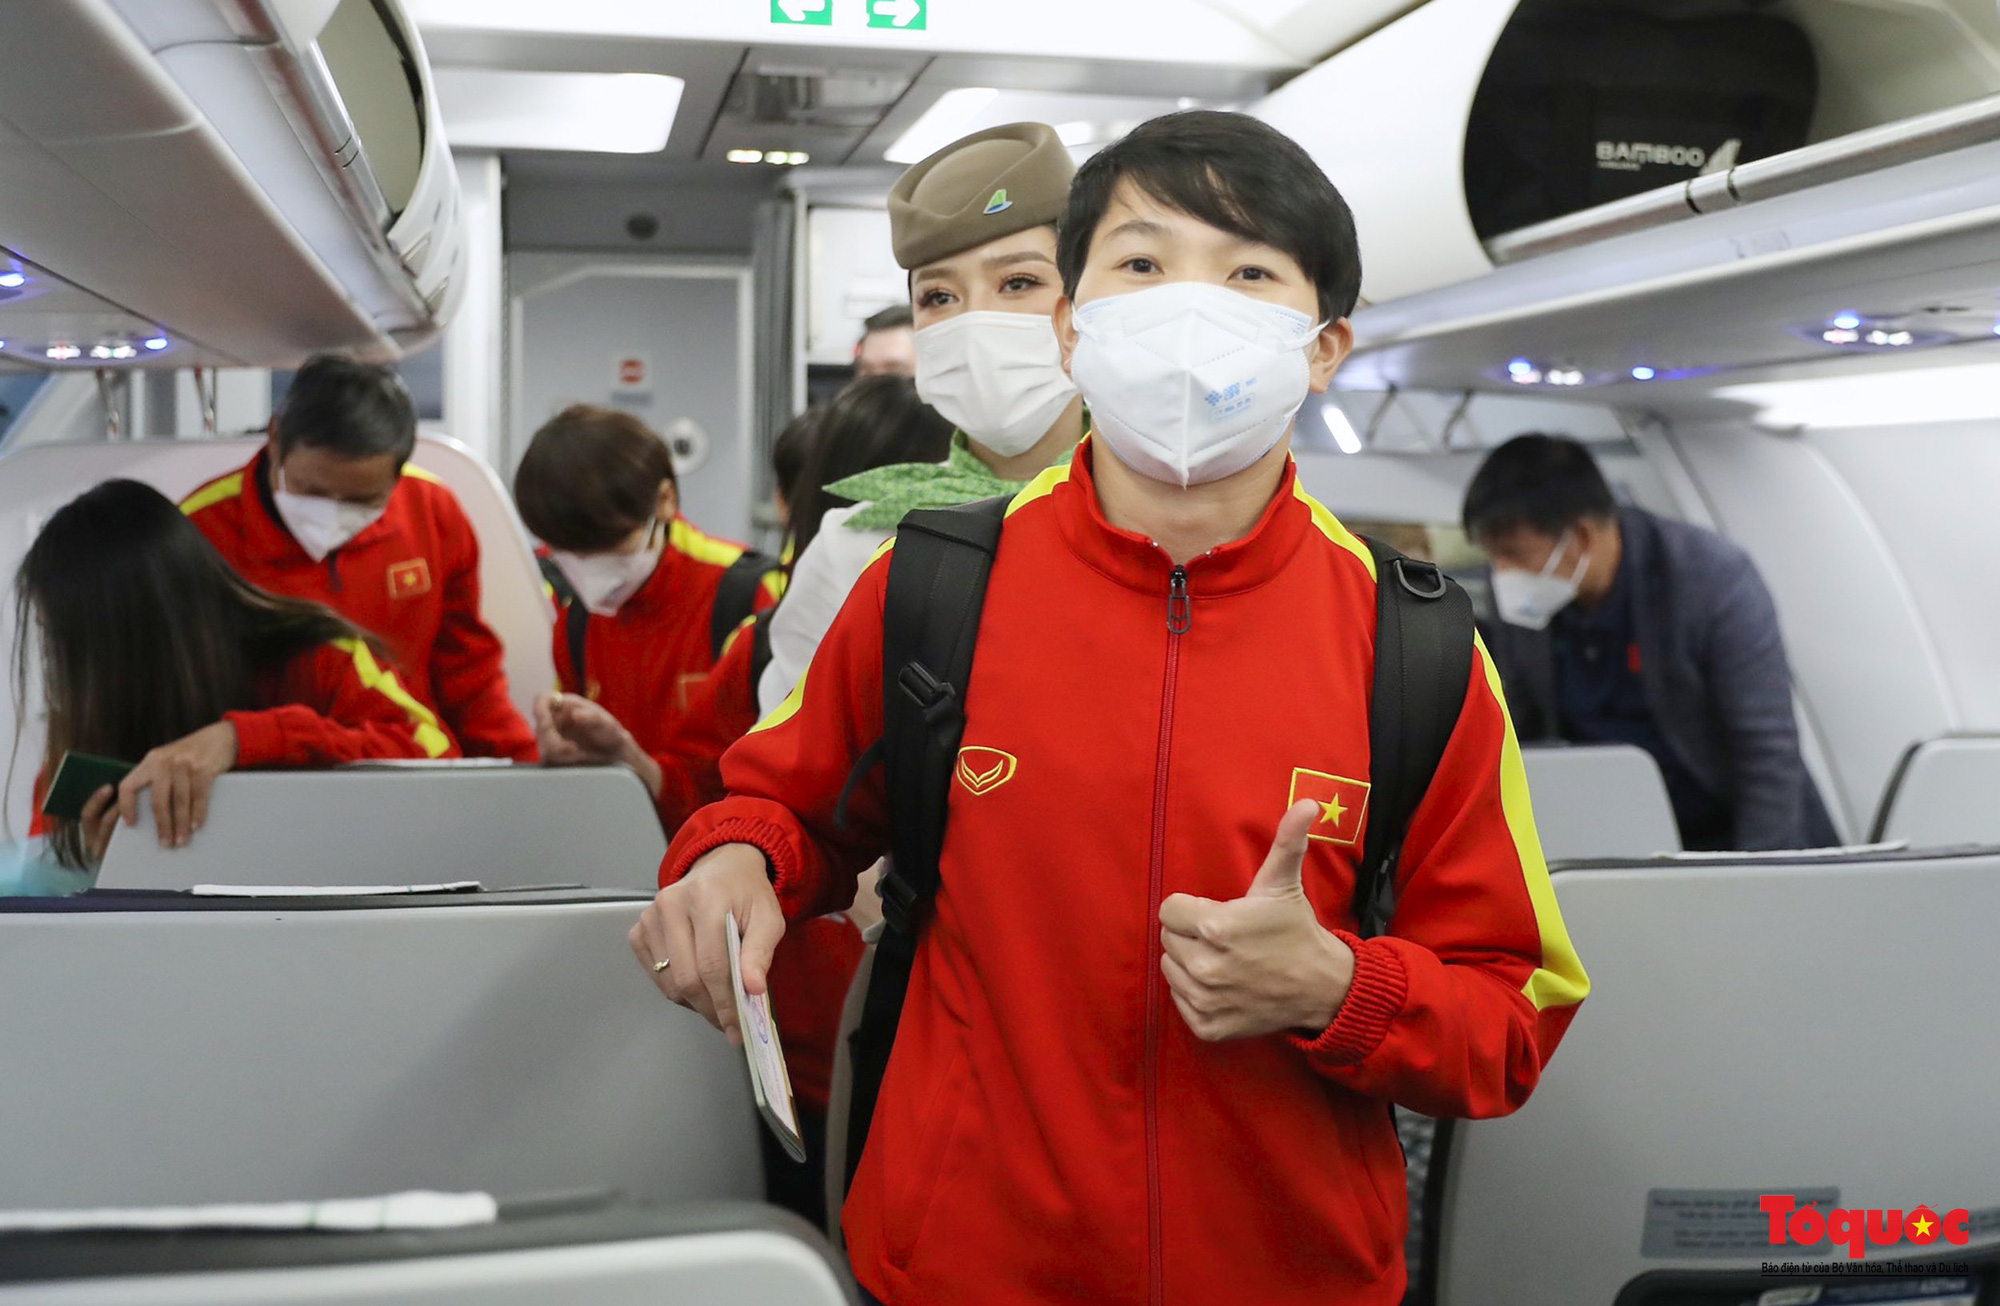 [Độc quyền] Những hình ảnh đầu tiên của đội tuyển bóng đá nữ Việt Nam trên chuyến bay về nước - Ảnh 9.